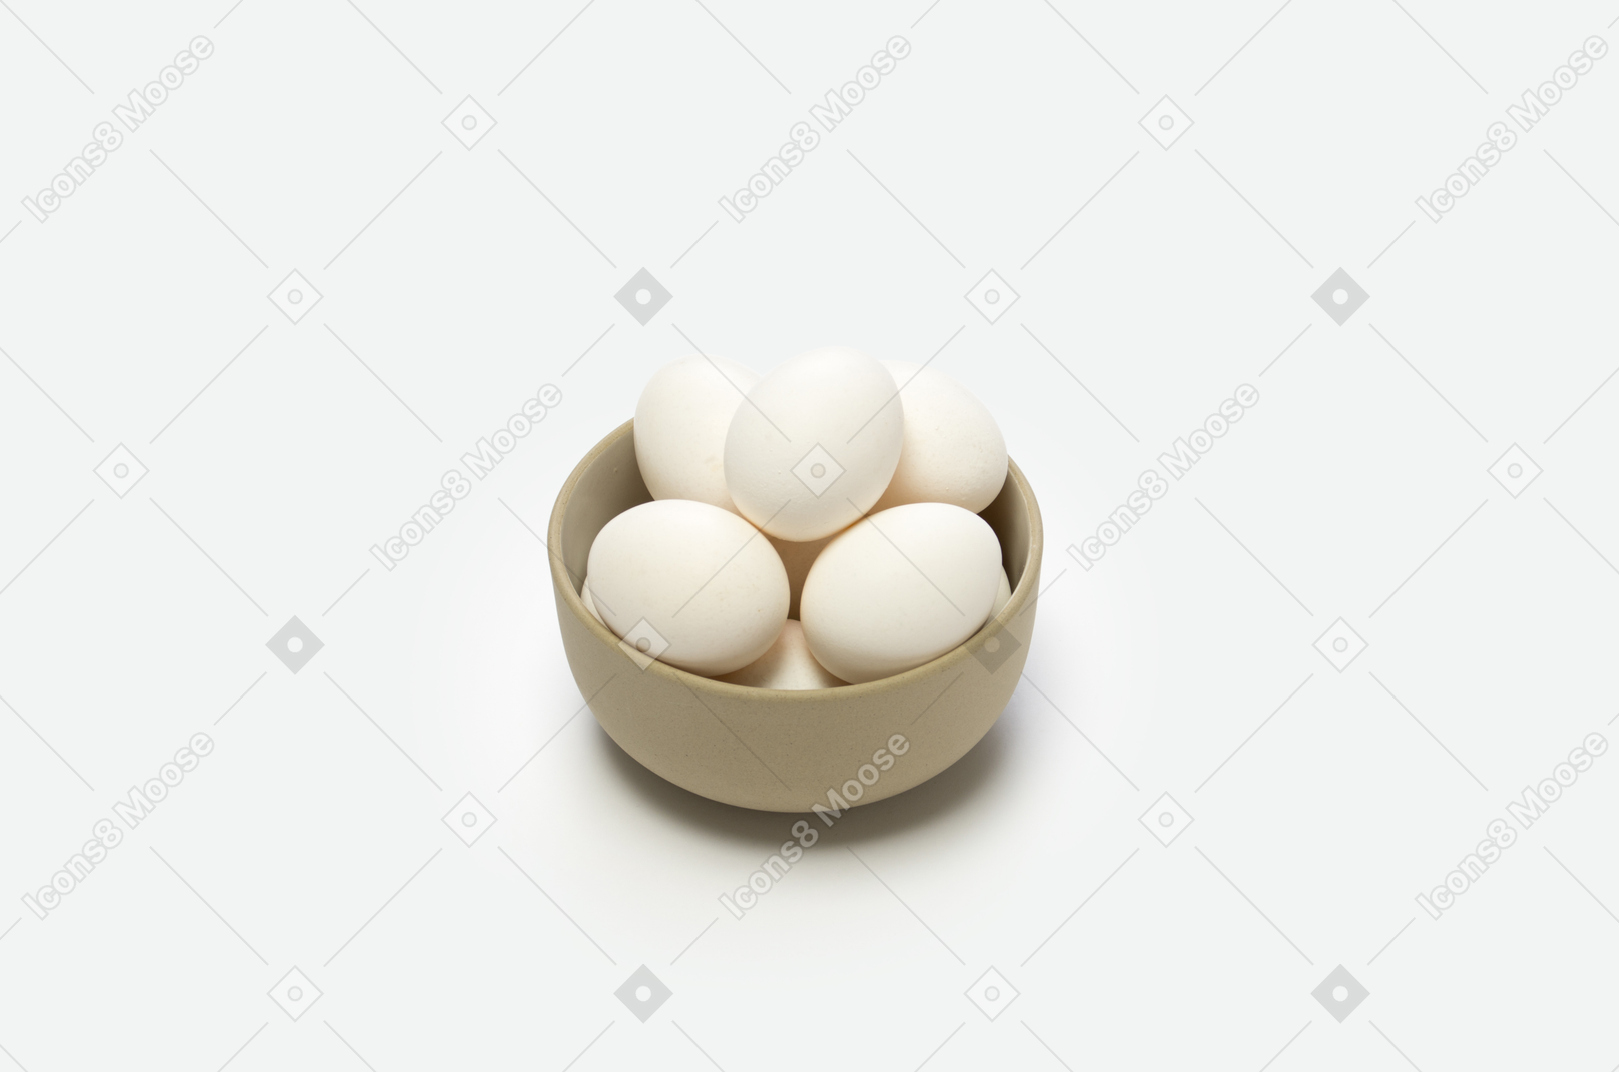 鸡蛋是非常好的蛋白质来源